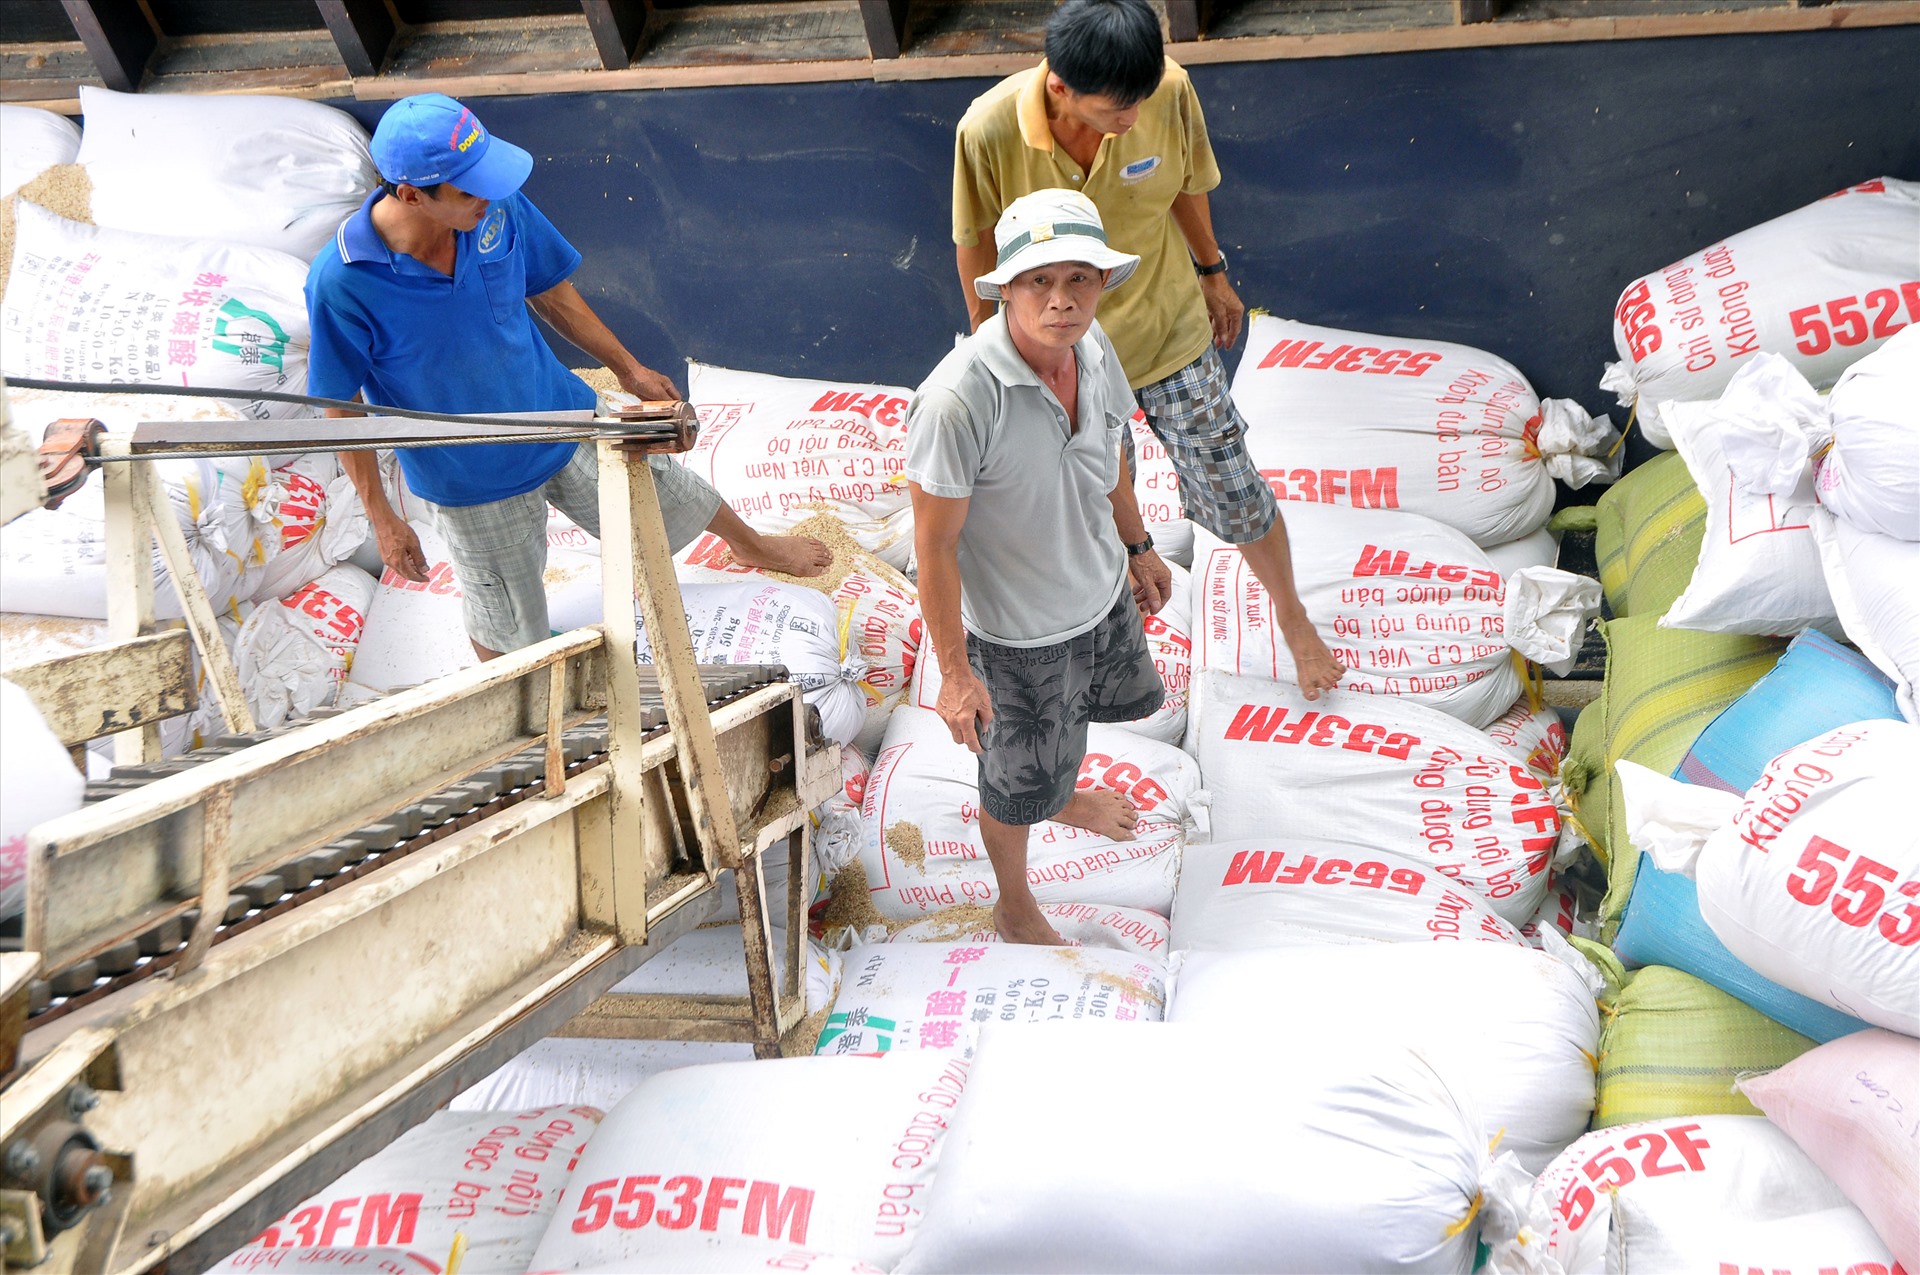 Đến nay, Việt Nam đã vươn lên trở thành một cường quốc xuất khẩu gạo nhất nhì trên thế giới với sản lượng xuất khẩu khoảng 6 triệu tấn/năm. Chỉ riêng 2 tháng đầu năm 2020, dù bị ảnh hưởng dịch COVID-19, nhưng xuất khẩu gạo vẫn đạt 929.000 tấn, thu về hơn 430 triệu USD, tăng 30,5% về lượng và tăng 38% về kim ngạch so với cùng kỳ năm 2019. Ảnh: Hoạt động tại một doanh nghiệp xuất khẩu ở Tiền Giang.